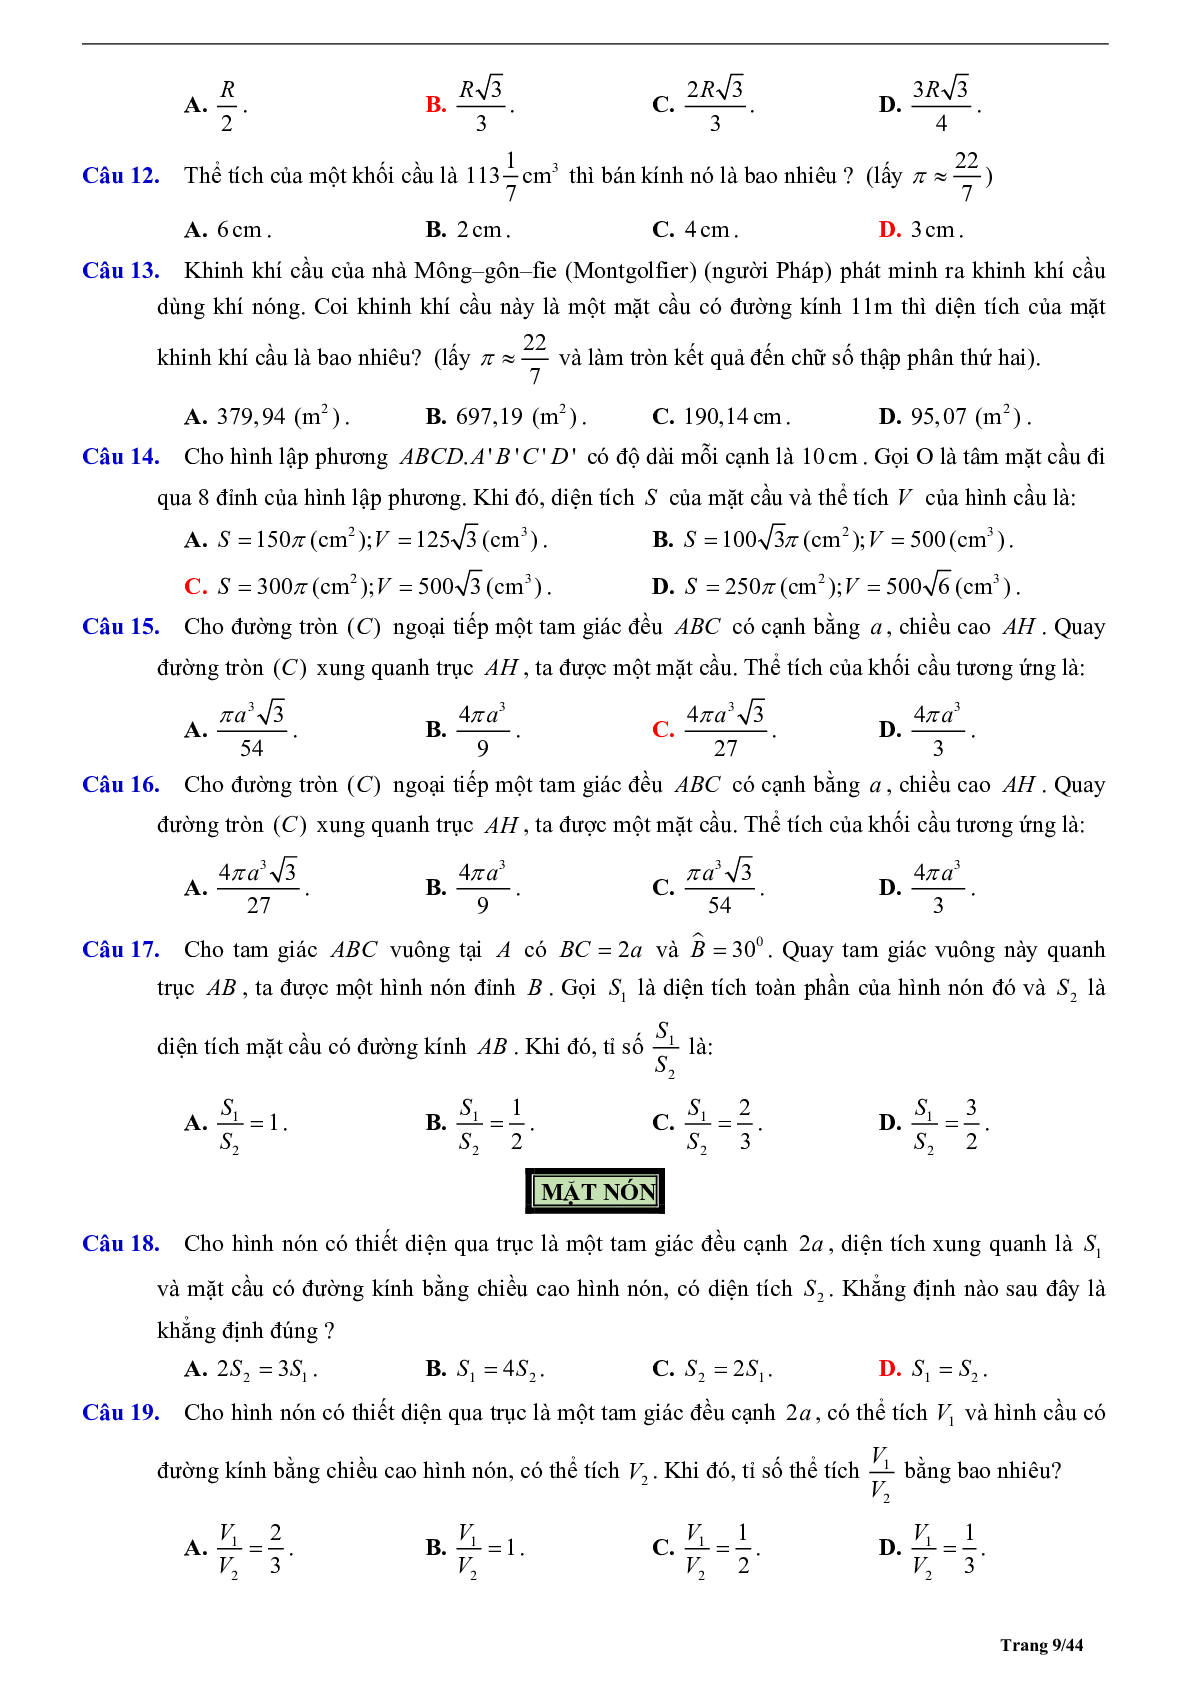 Tóm tắt lý thuyết và bài tập trắc nghiệm về mặt cầu - mặt nón - mặt trụ có đáp án (trang 9)